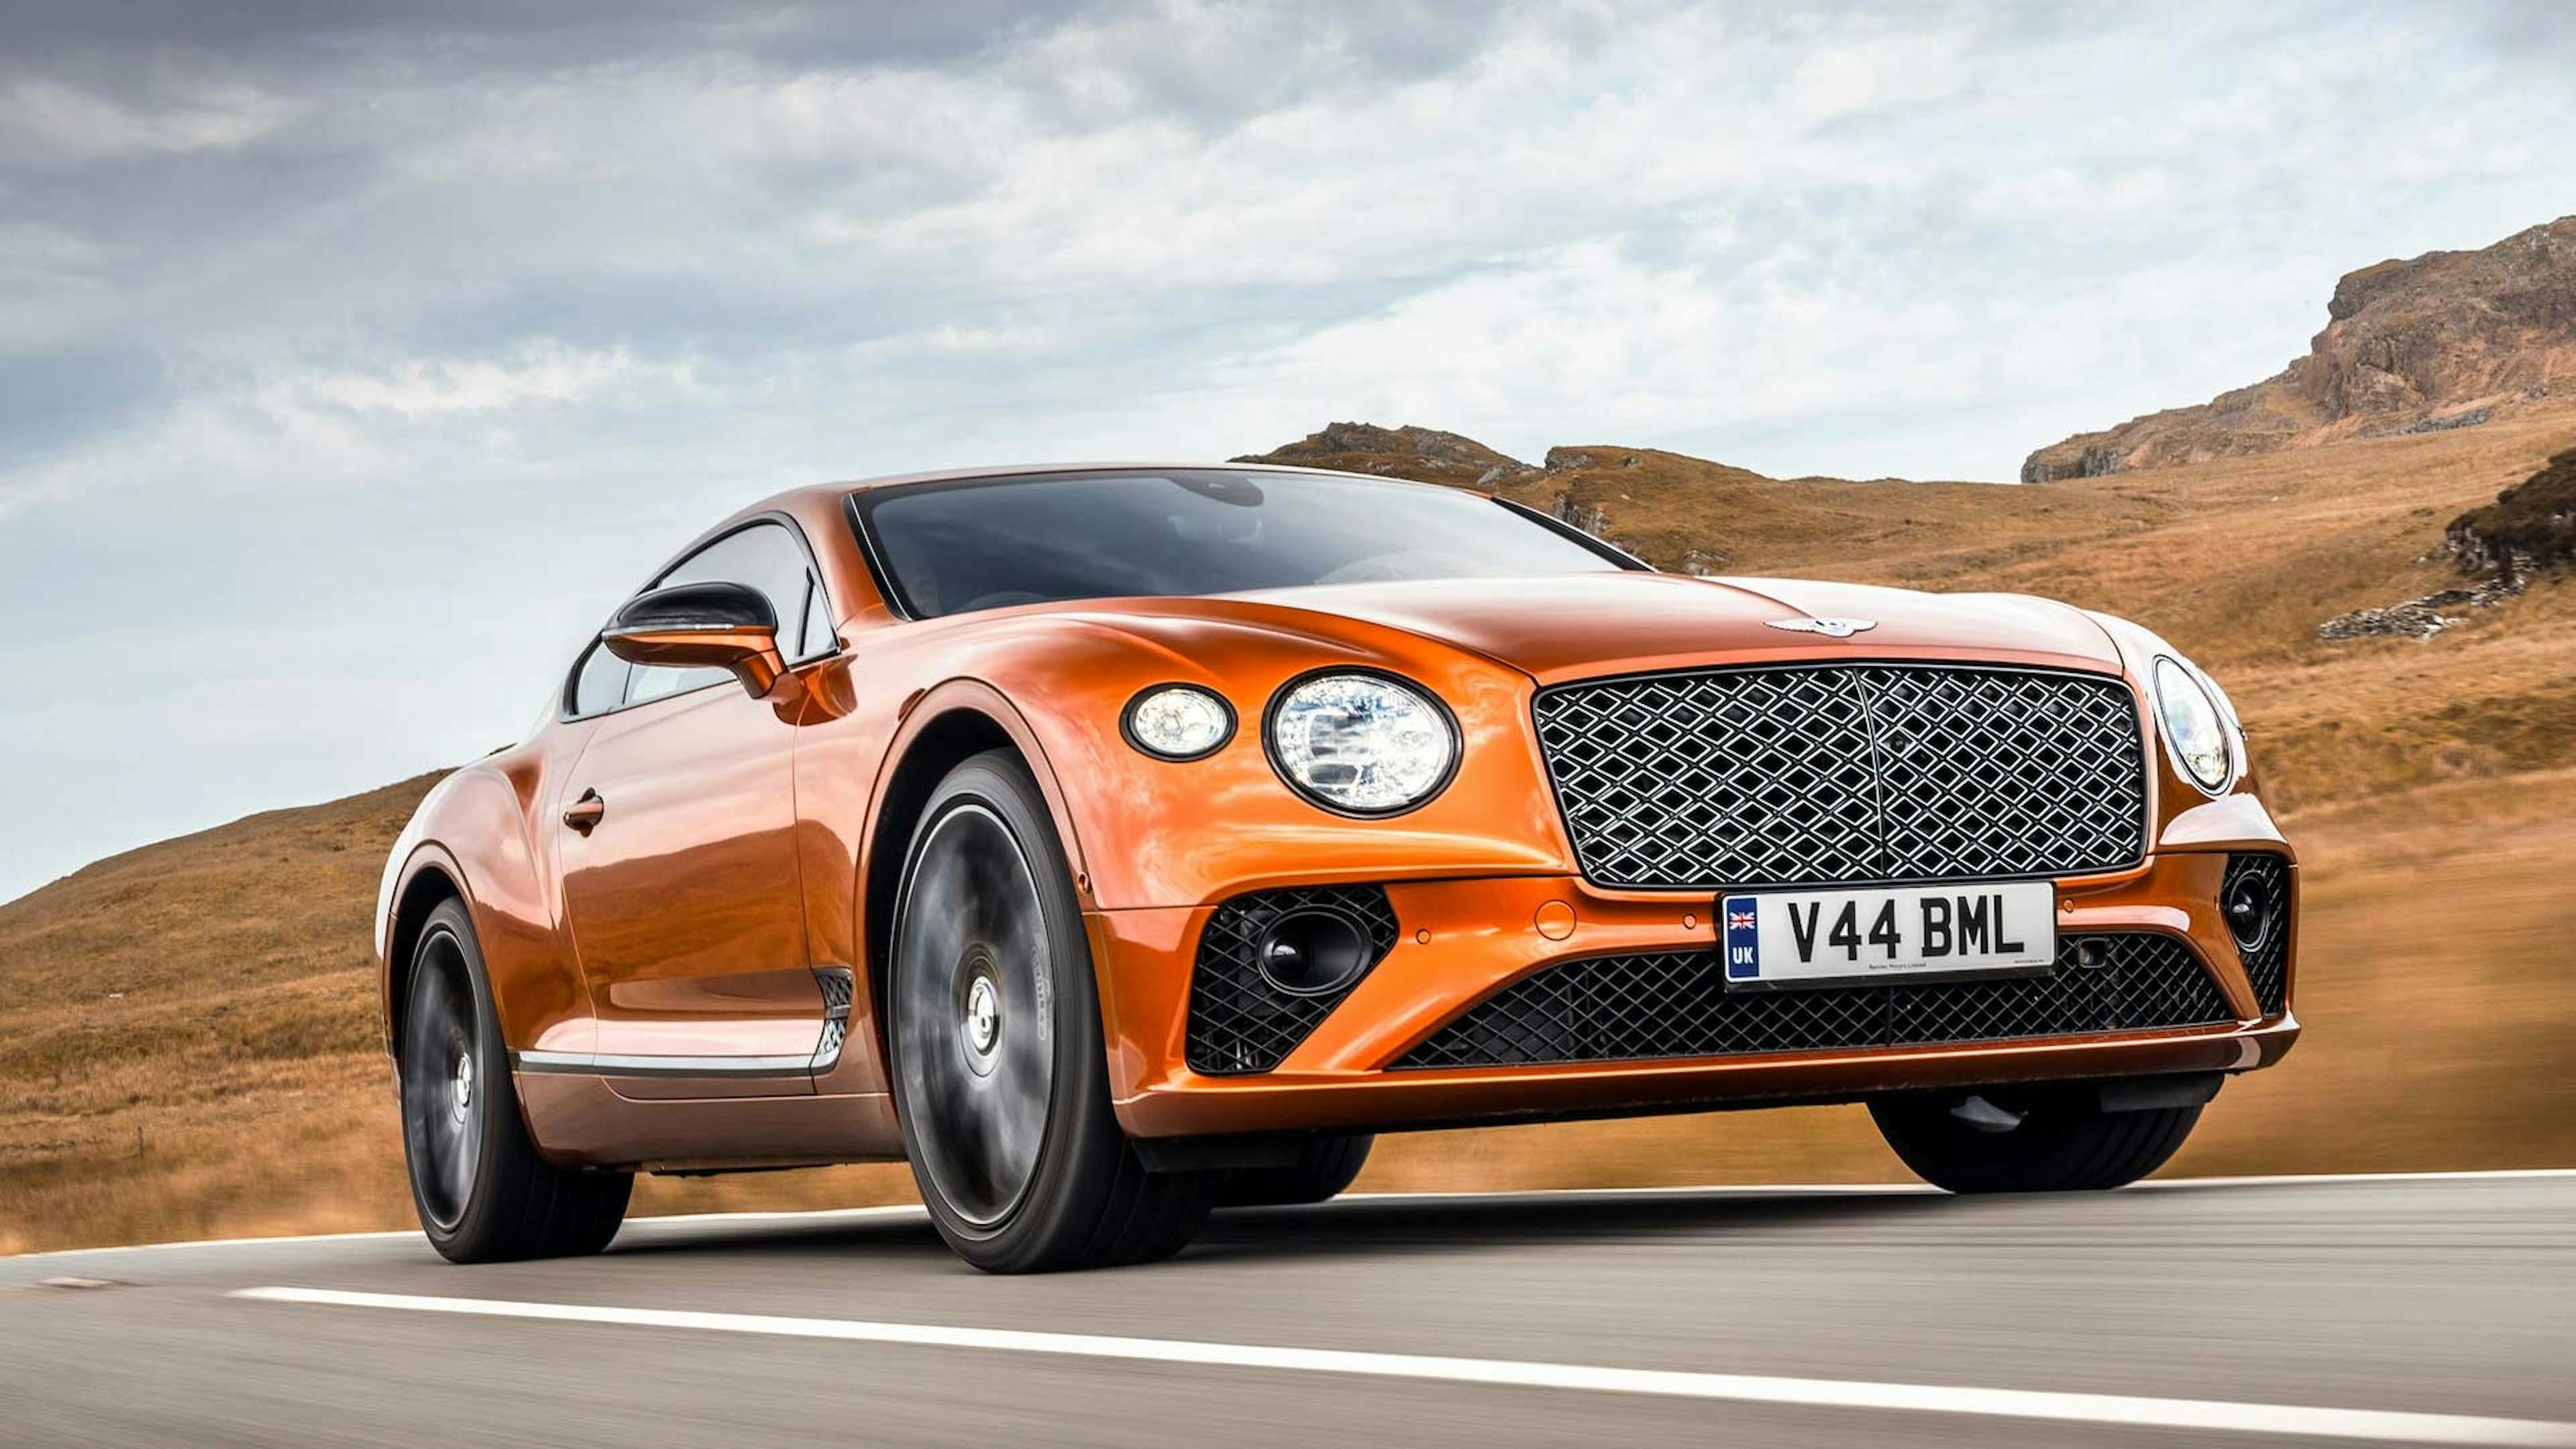 Ein orangefarbener Bentley Continental GT fährt durch eine karge Landschaft.